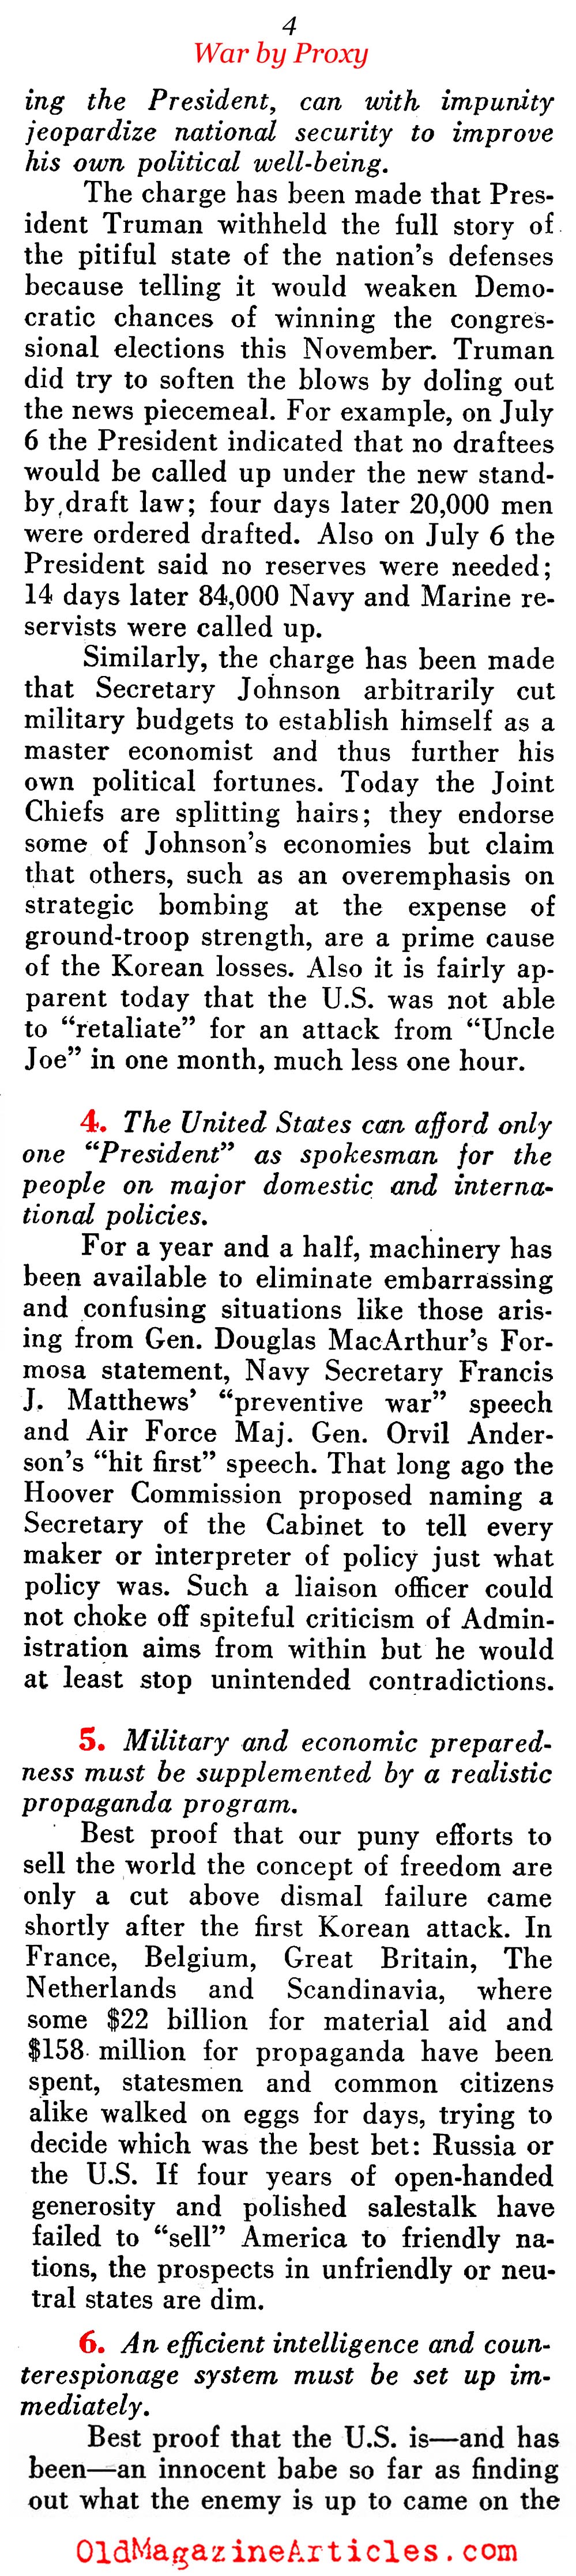 The Satellite War (Pathfinder Magazine, 1950)